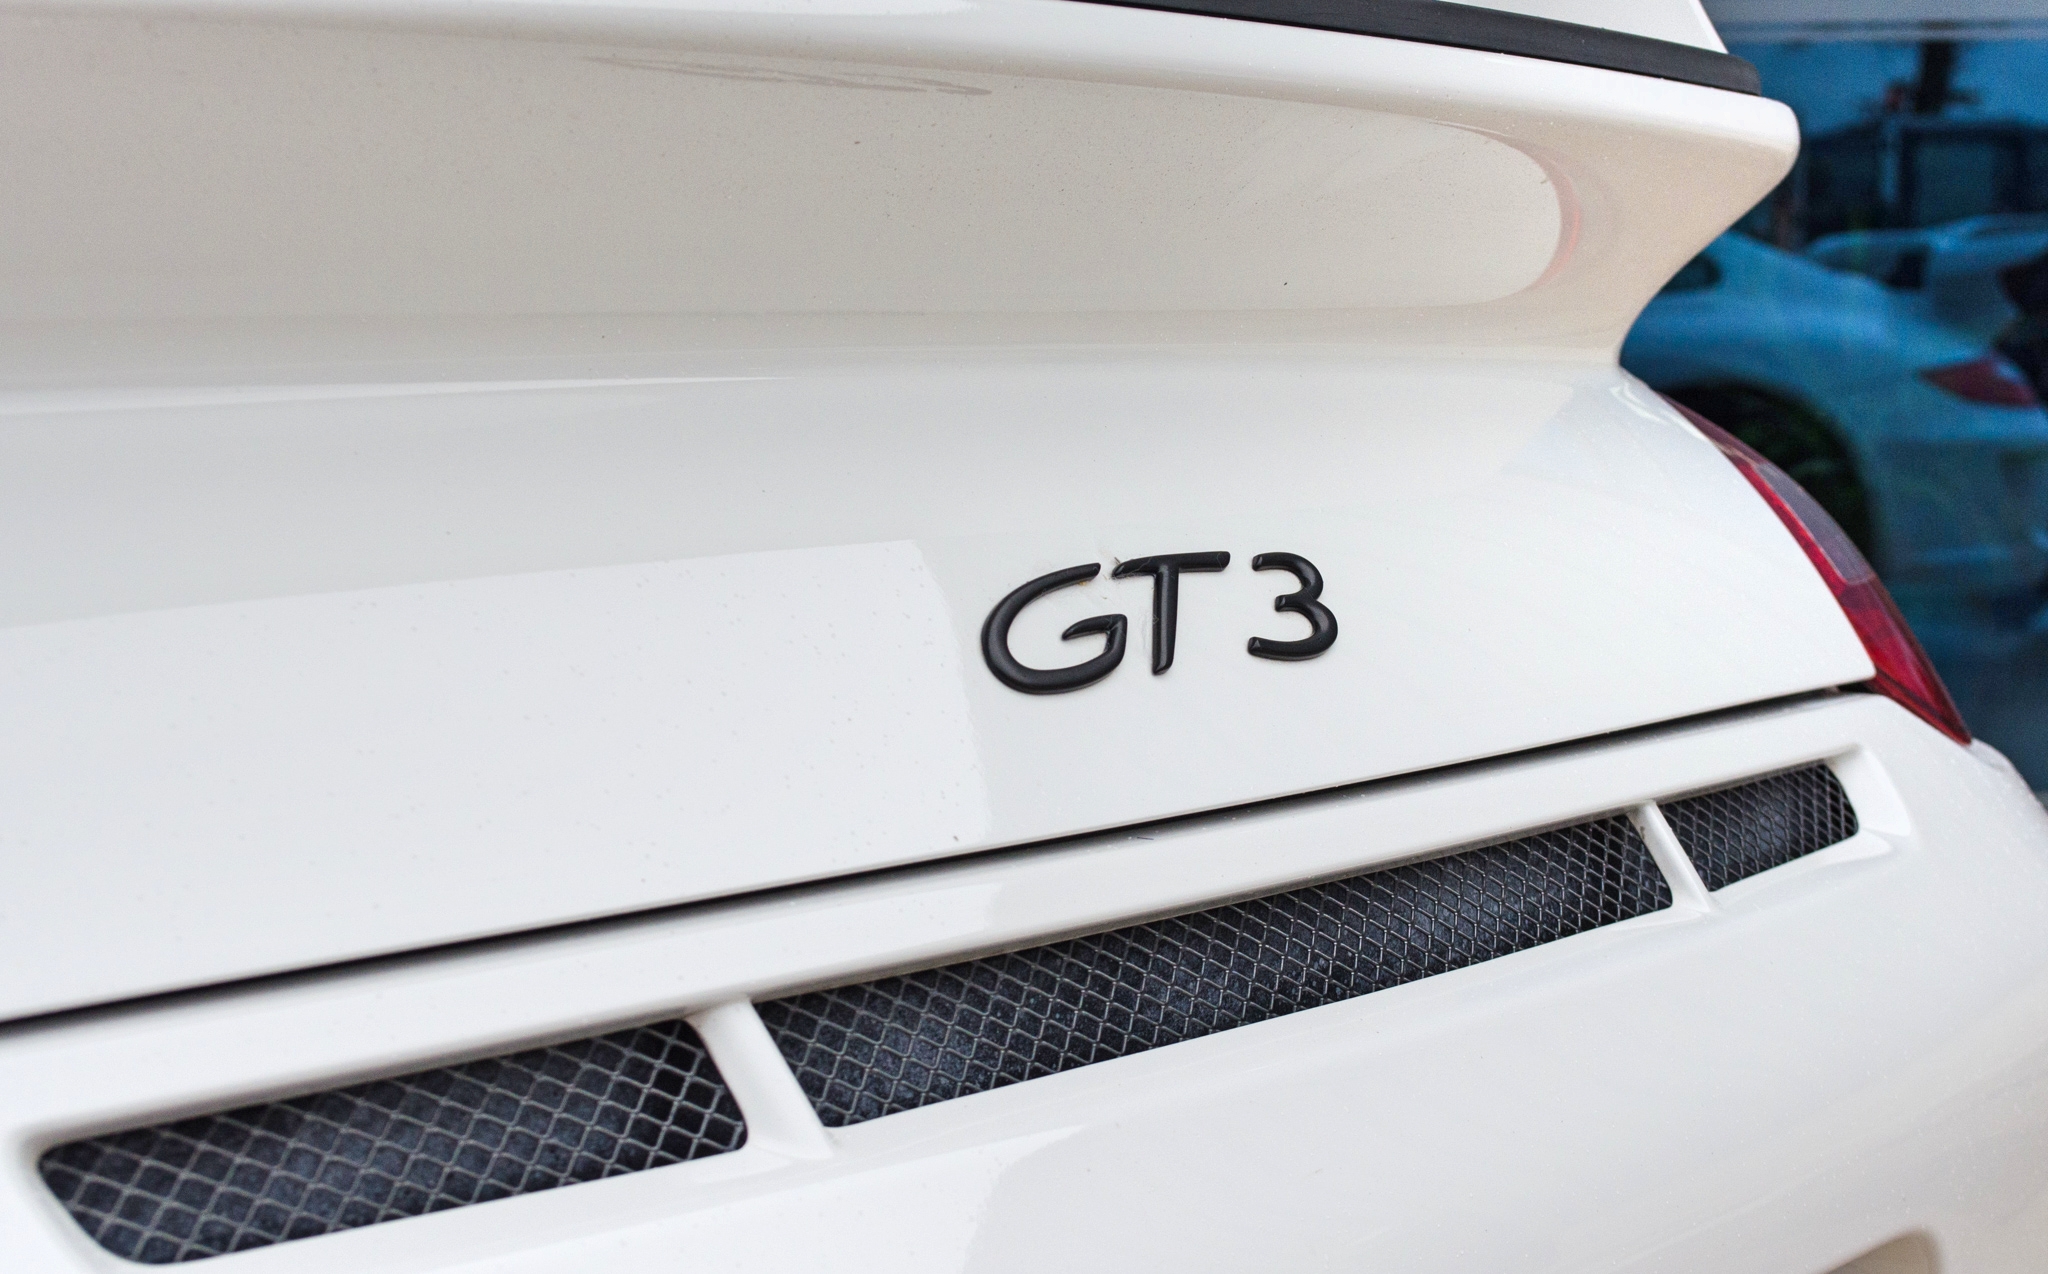 2010 Porsche 911 997.2 GT3 Club Sport 3.8 litre 2 door coupe - Image 29 of 58